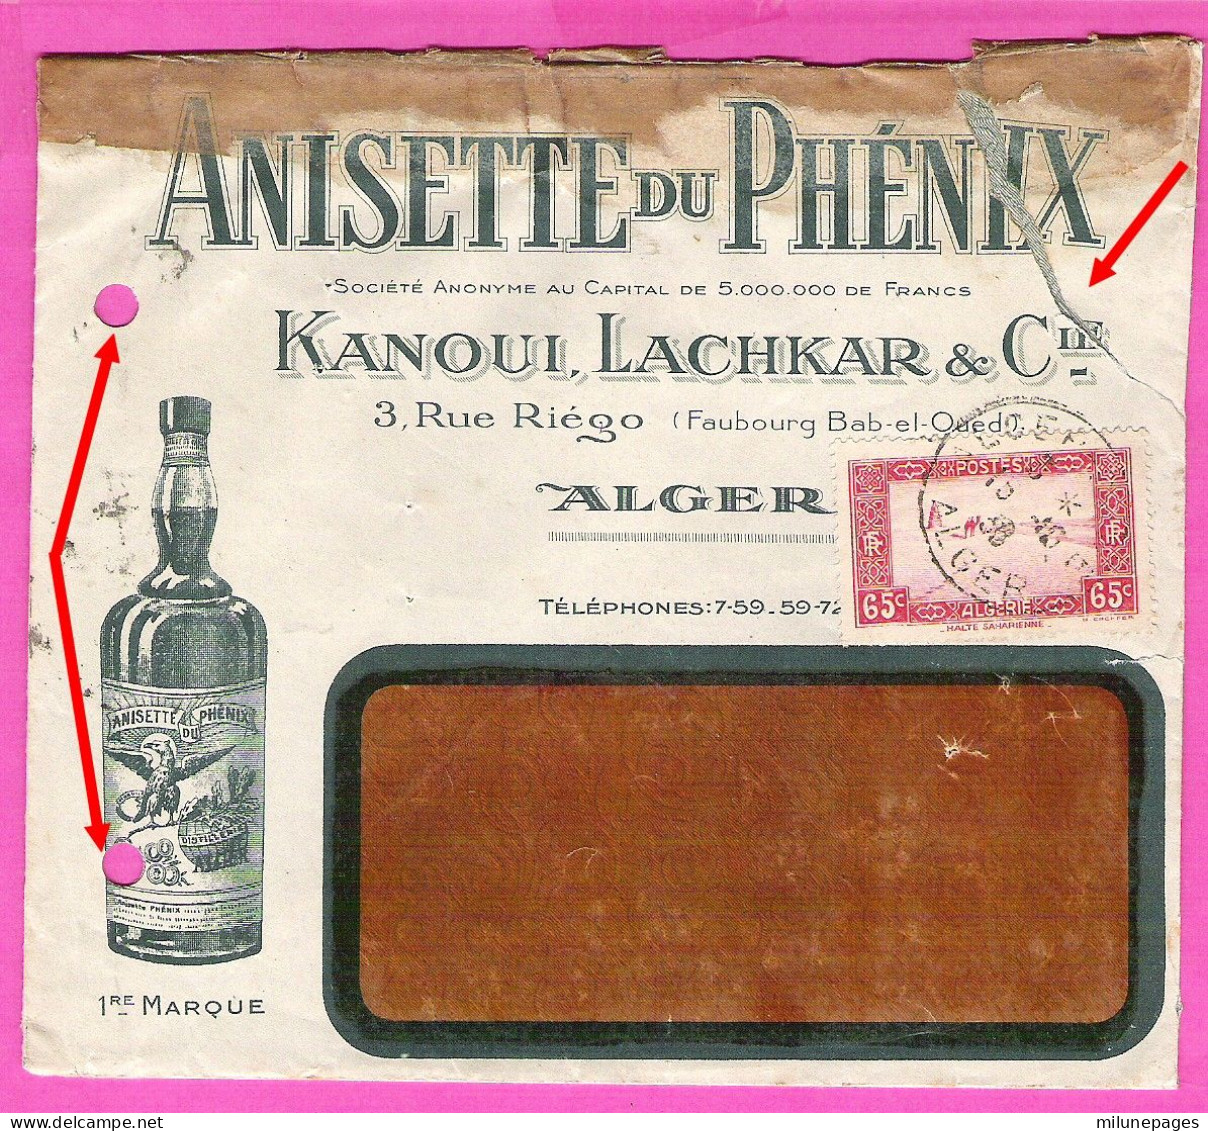 Enveloppe Illustrée Pour L'Anisette Du Phénix Kanoui, Lachkar & Cie à Alger En 1936 - Alimentos